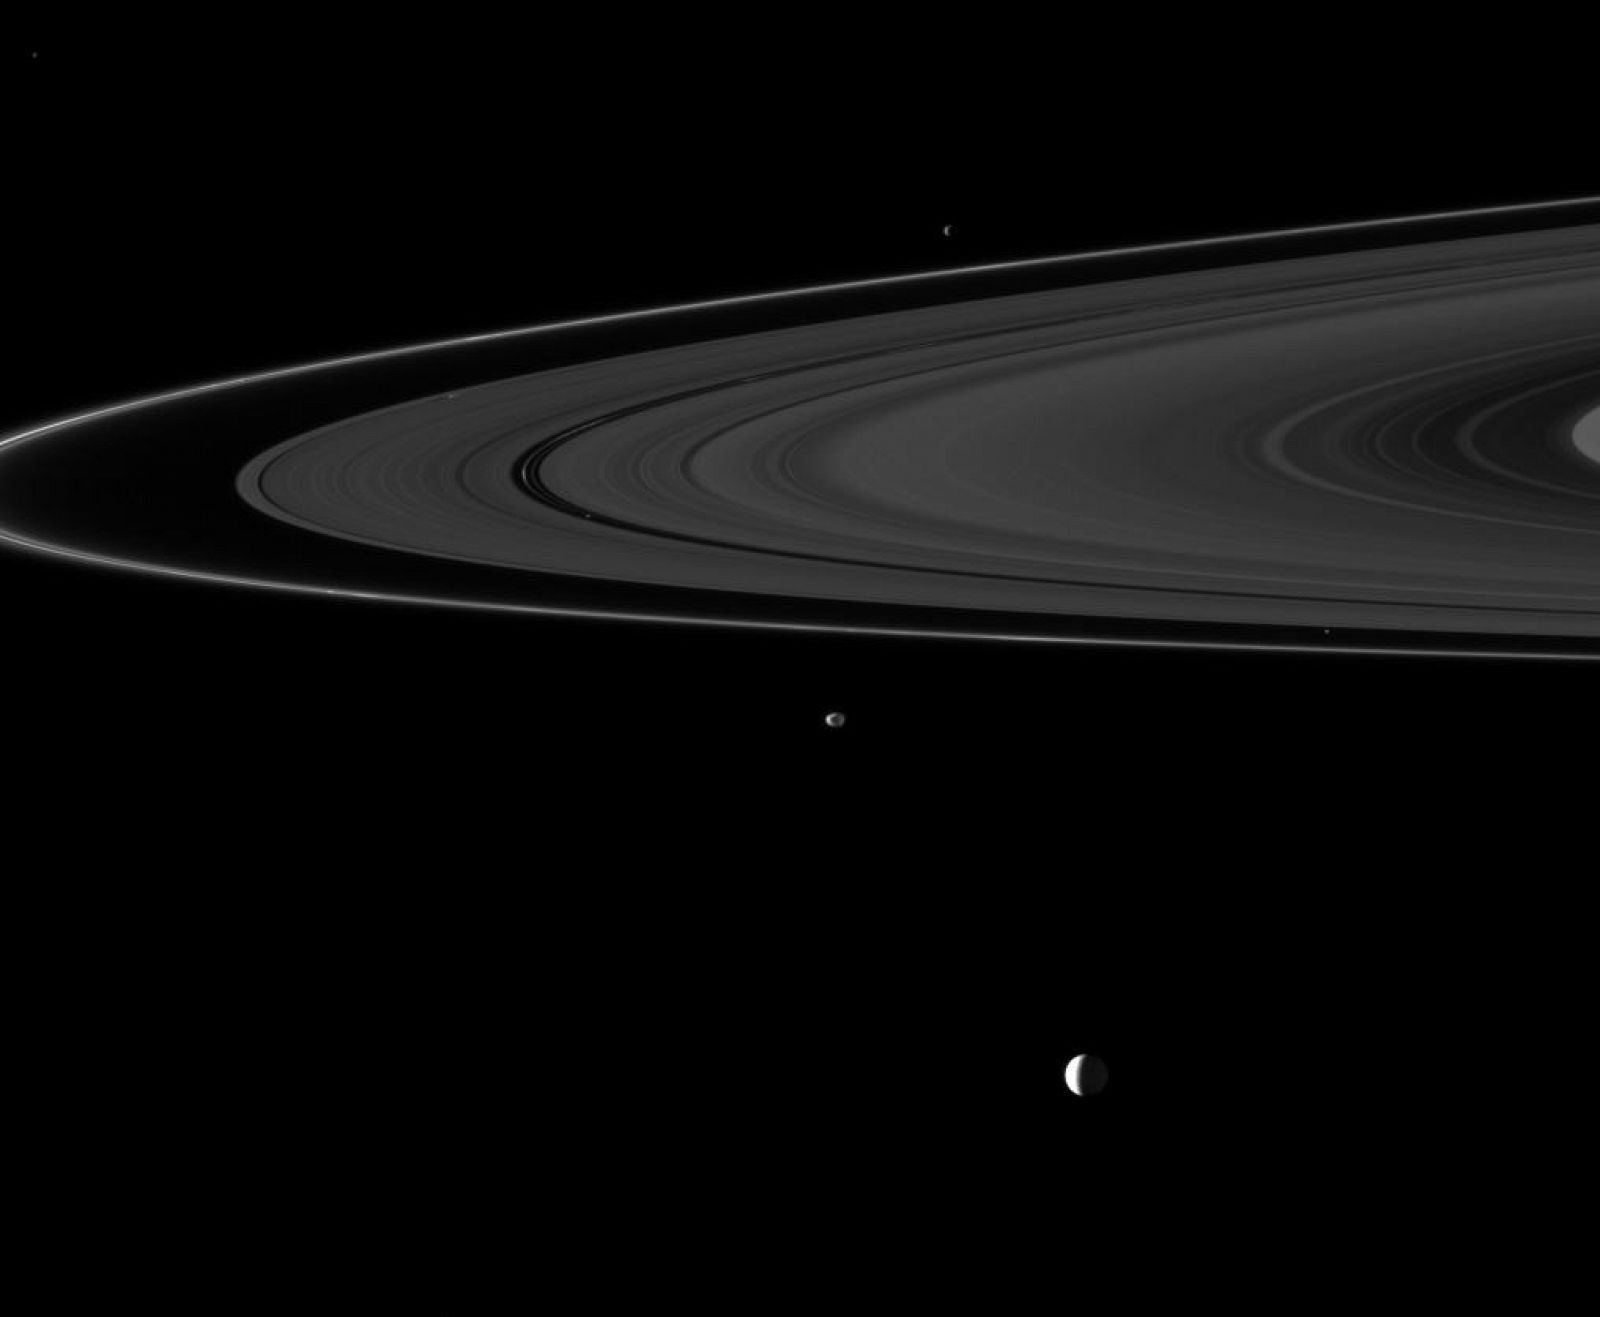 Imagen de los anillos de Saturno captada por la sonda Cassini.